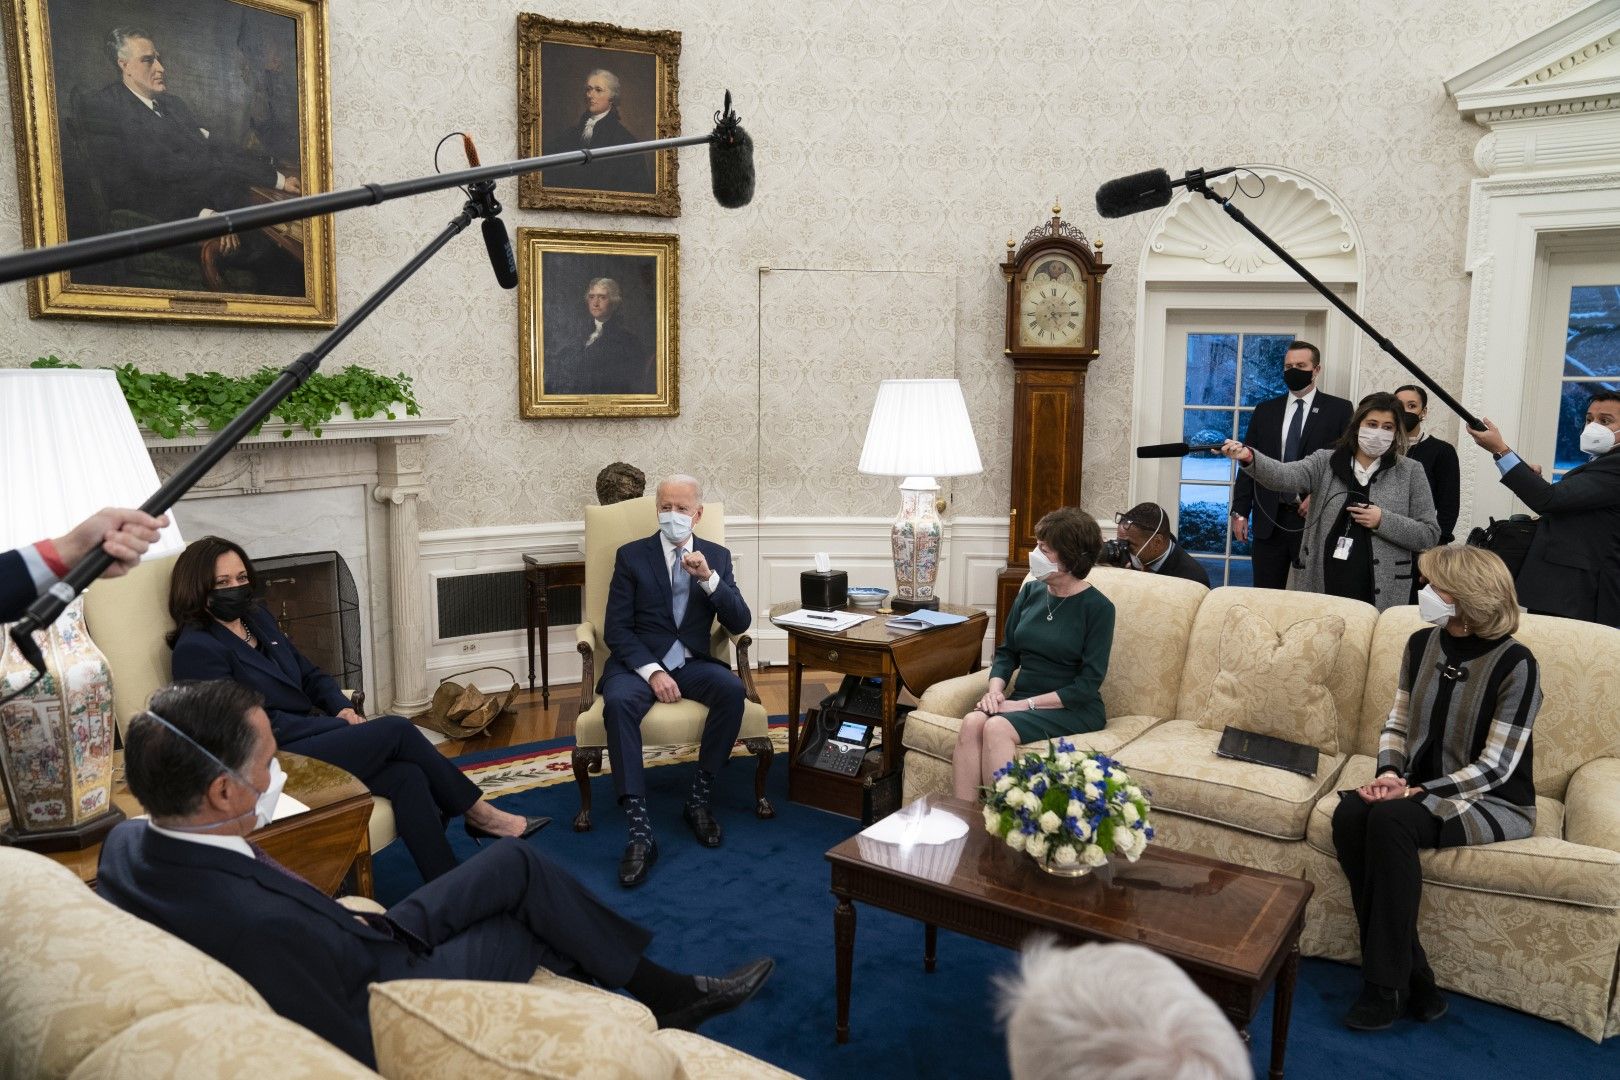 Президентът Джо Байдън се среща в Овалния кабинет със сенатори републиканци, за да обсъди пакета с мерки за облекчаване на пандемията. Отляво, сенатор Мит Ромни (Юта), вицепрезидент Камала Харис, Байдън, сенатор Сюзън Колинс, (Мейн) и сенатор Лиза Мурковс